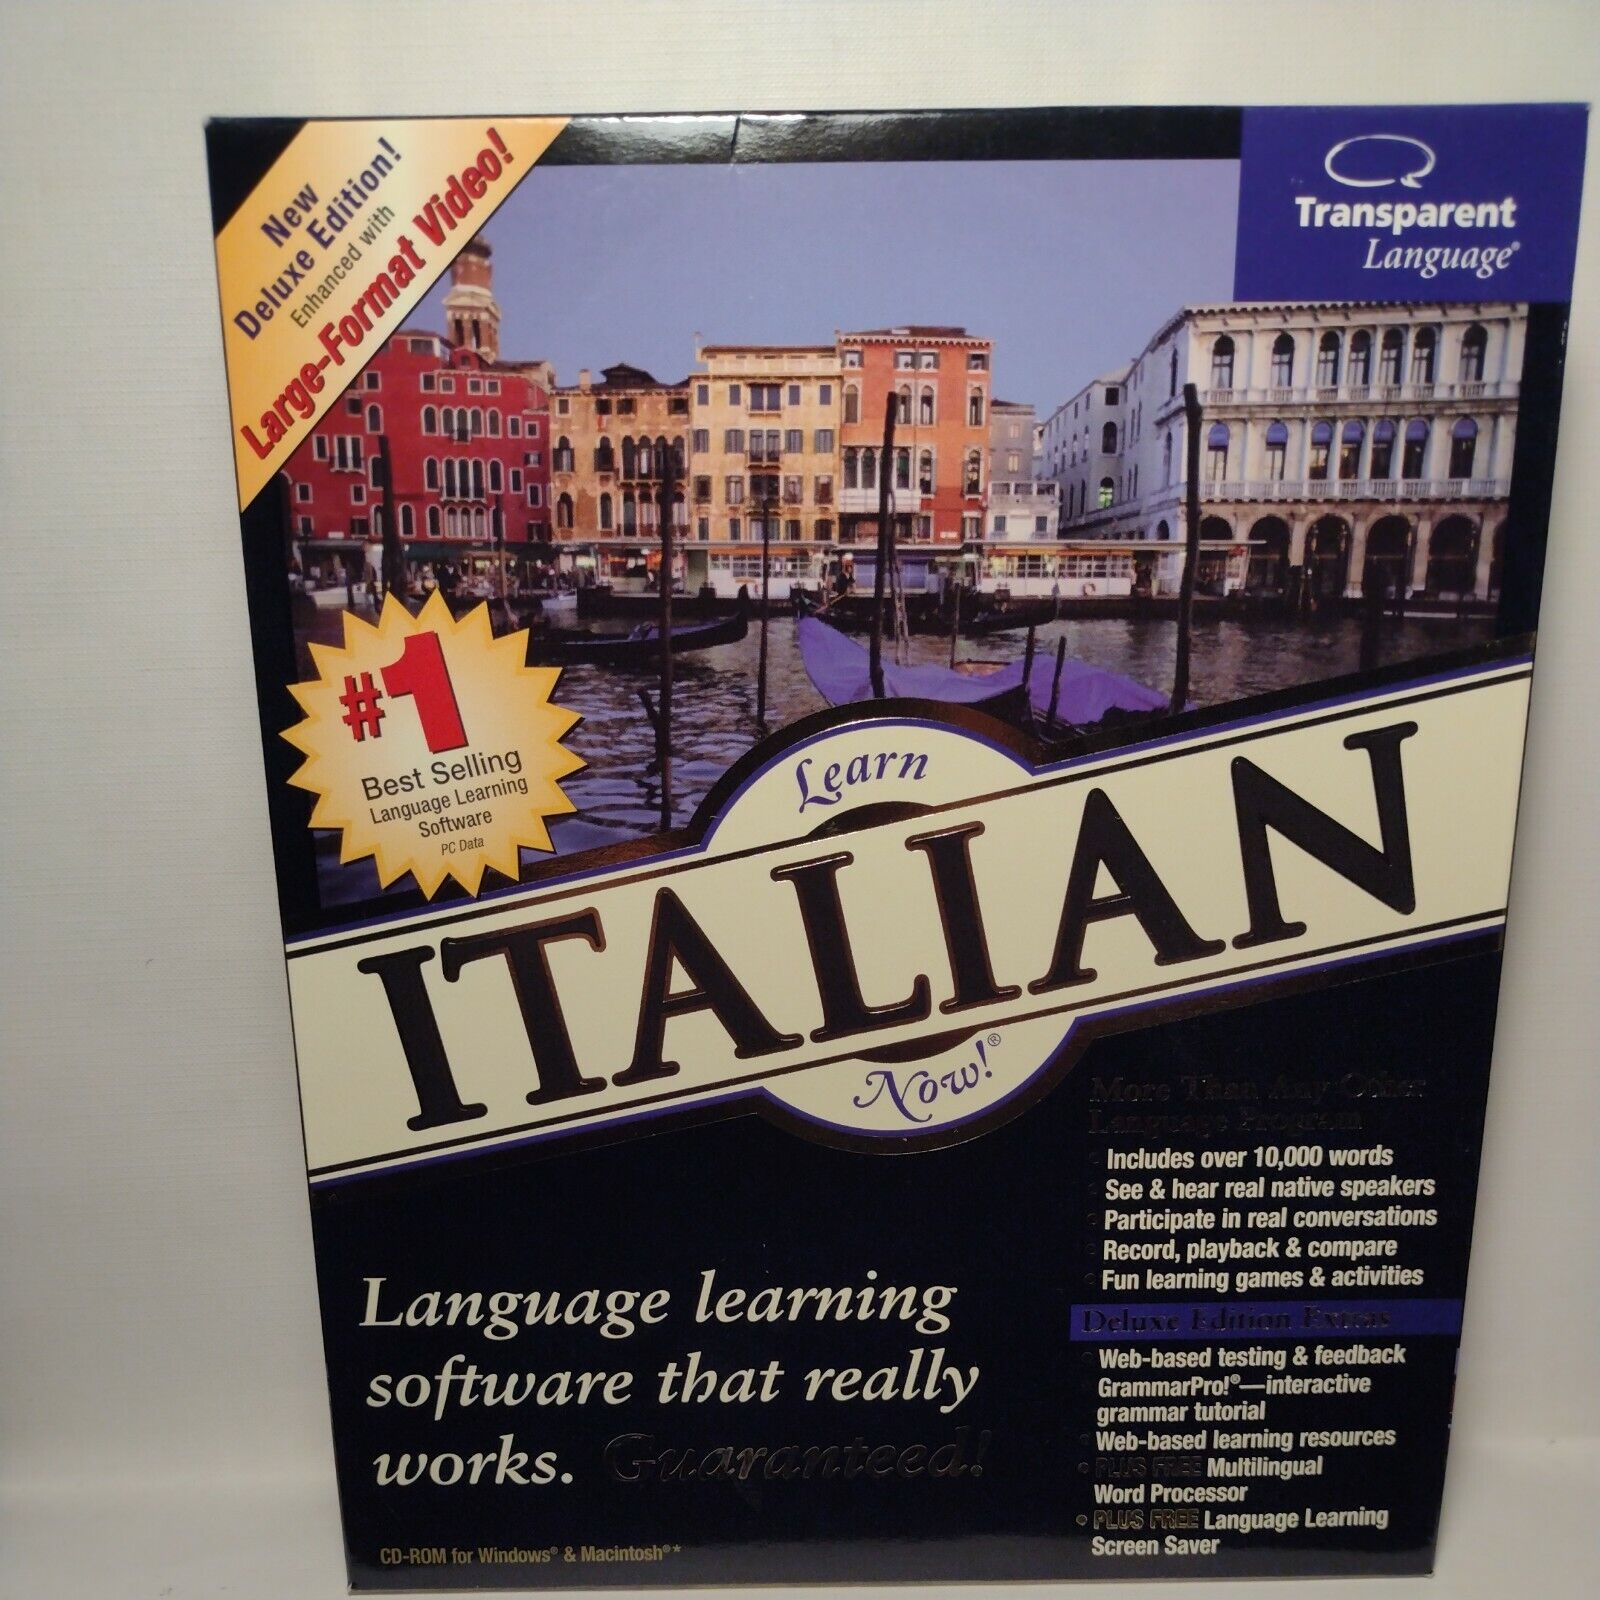 Transparent Language ItalianNow 9.0 for PC, Mac complete 